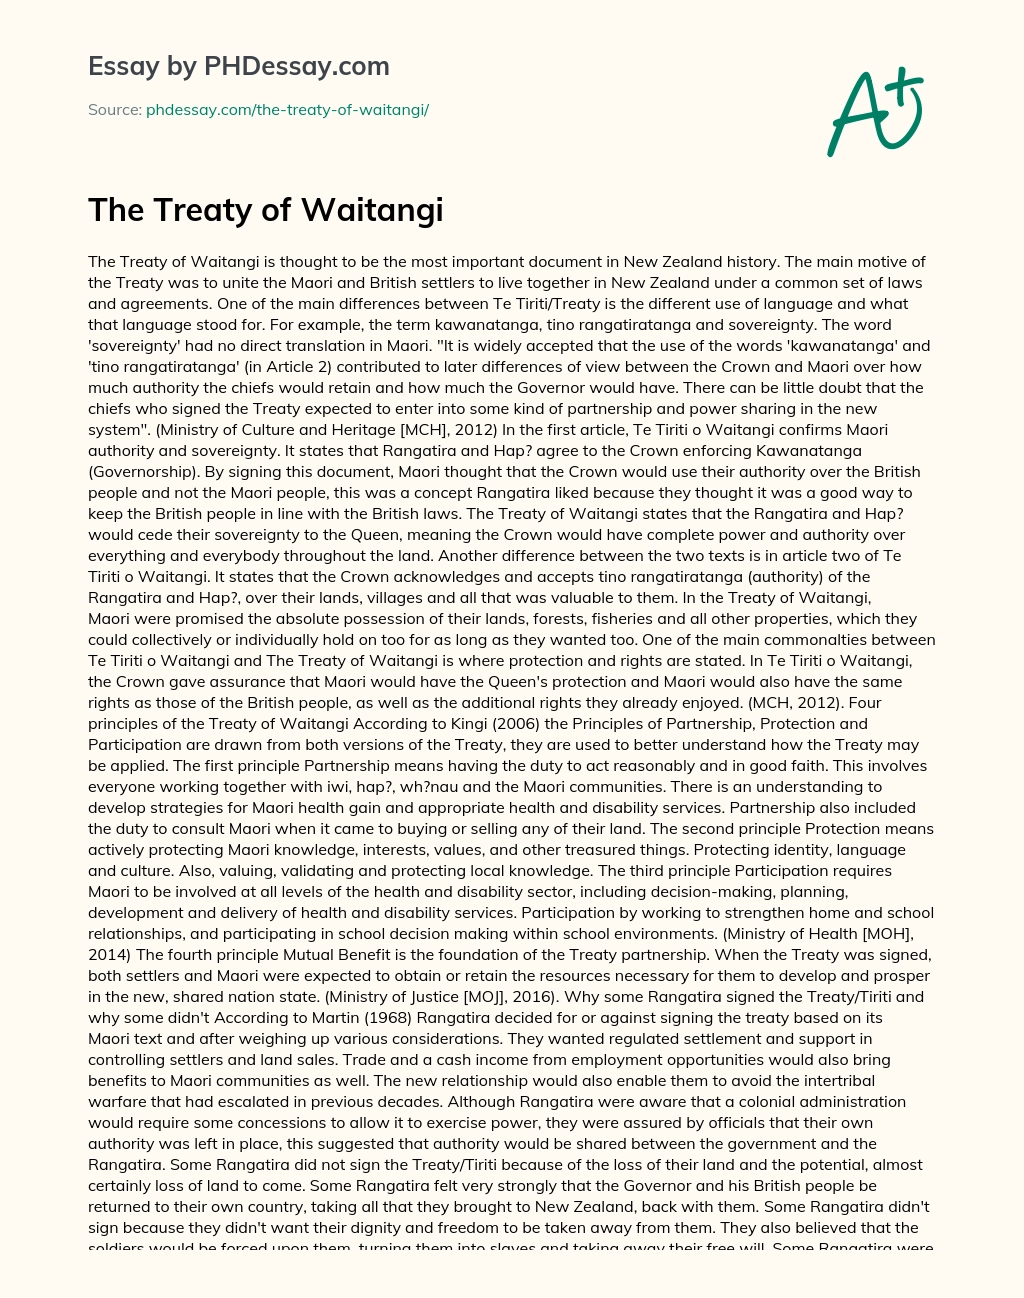 The Treaty of Waitangi essay